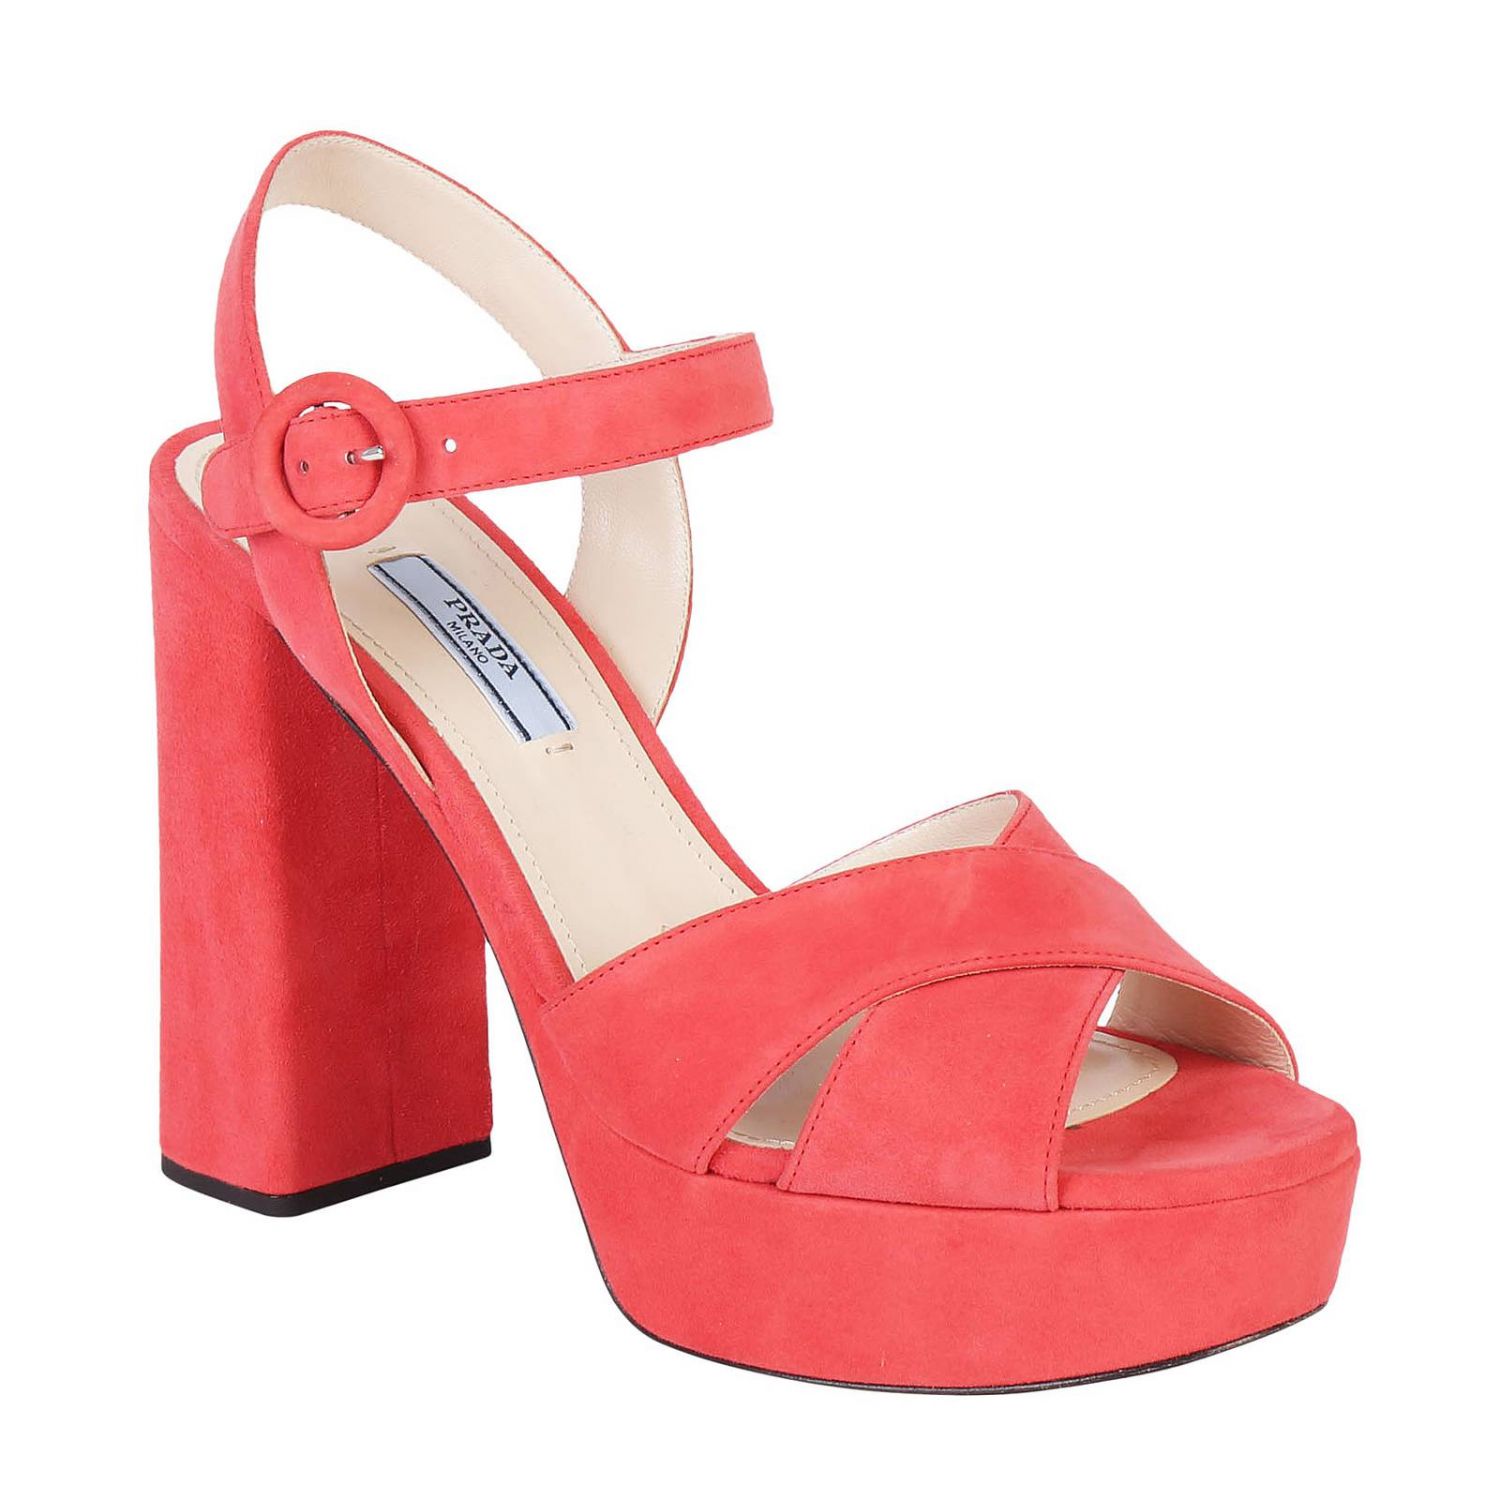 PRADA: Shoes women - Coral | Heeled Sandals Prada 1XP992 008 GIGLIO.COM